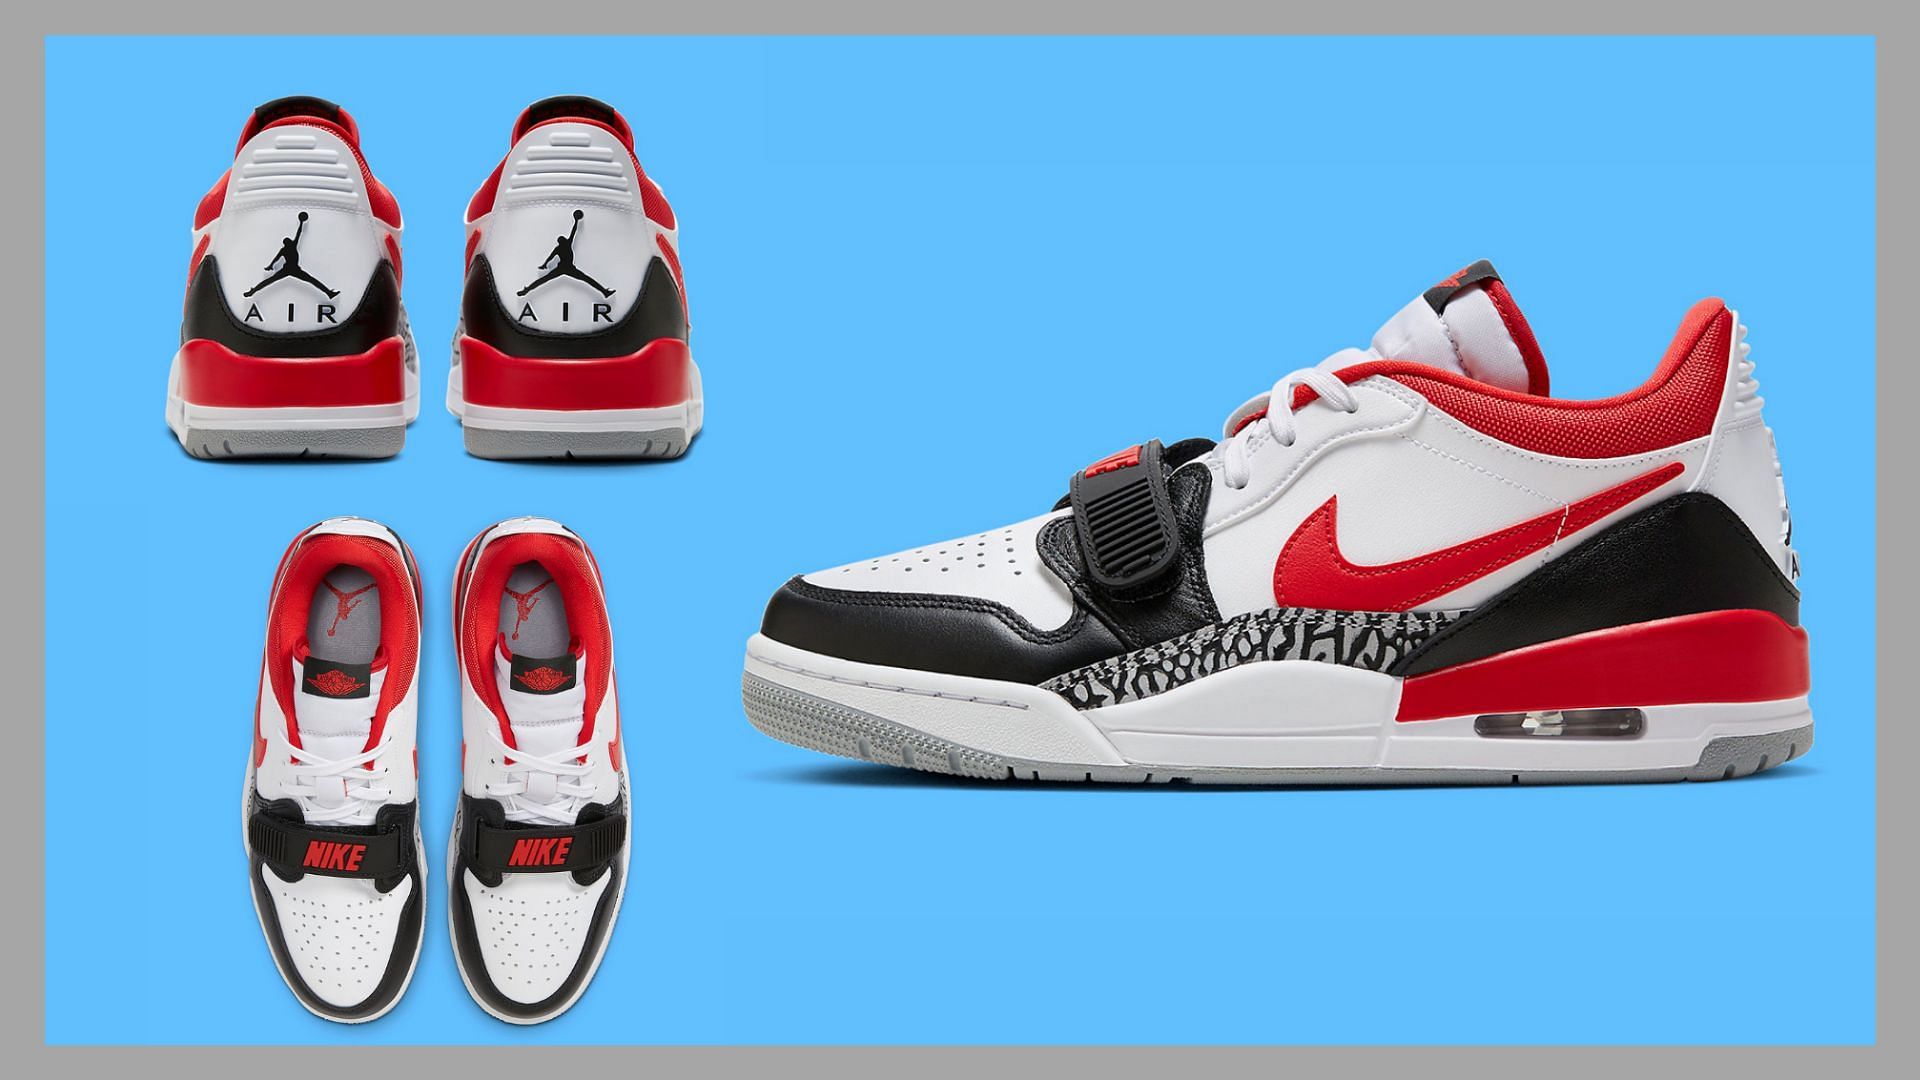 Take a detailed look at the Jordan Legacy 312 Low Black Toe shoes (Image via Sportskeeda)